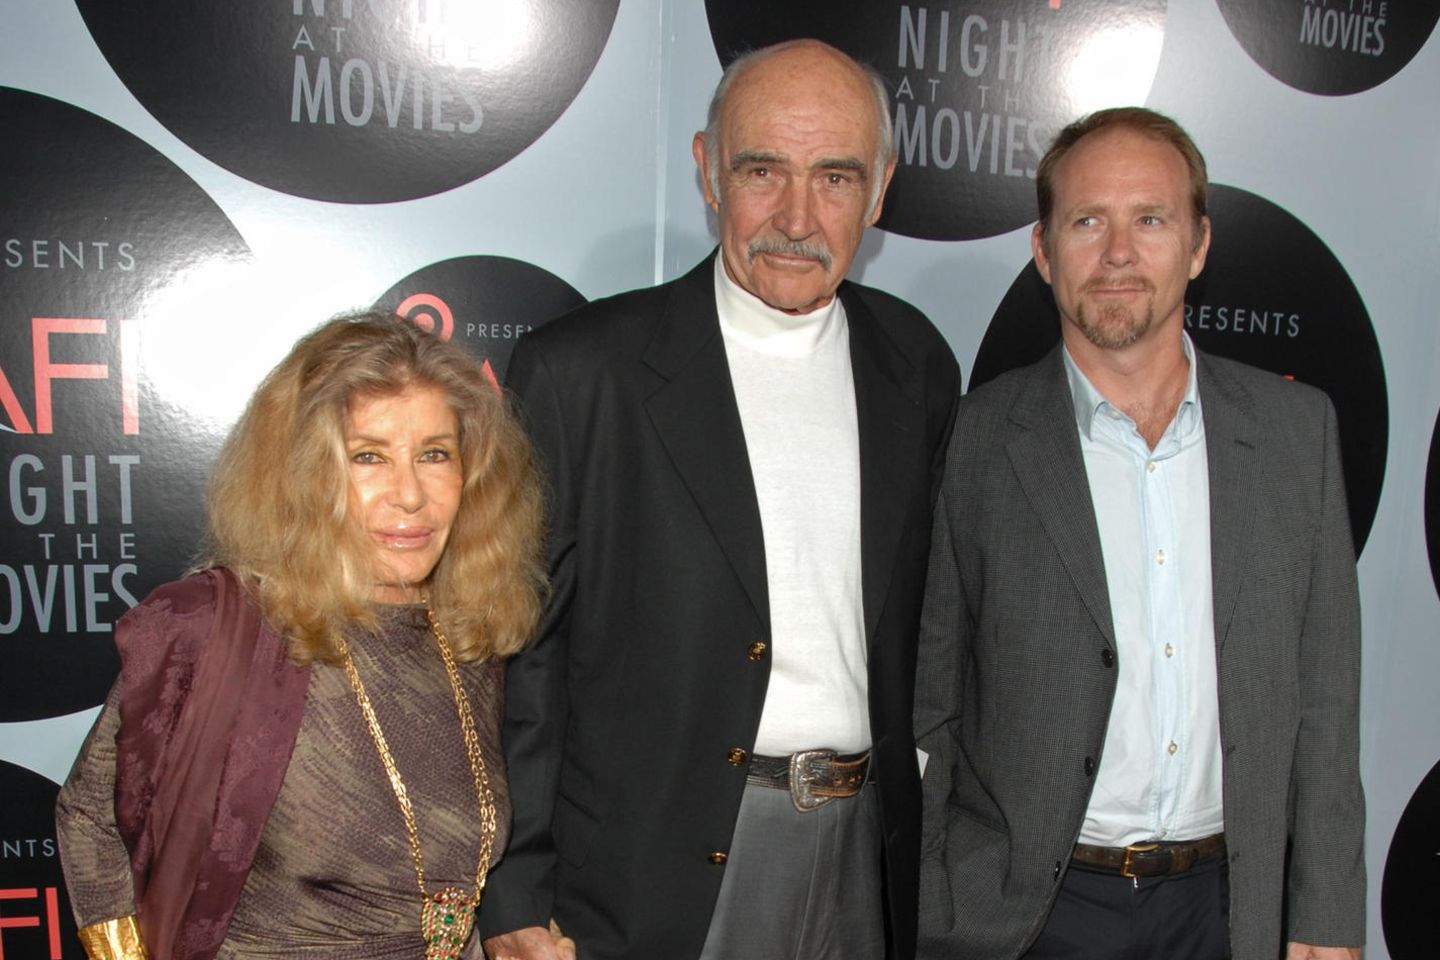 Sean Connery (†90) mit Ehefrau Micheline Roquebrune und Sohn Jason Connery bei der "AFI's Night At The Movies" im Oktober 2008.